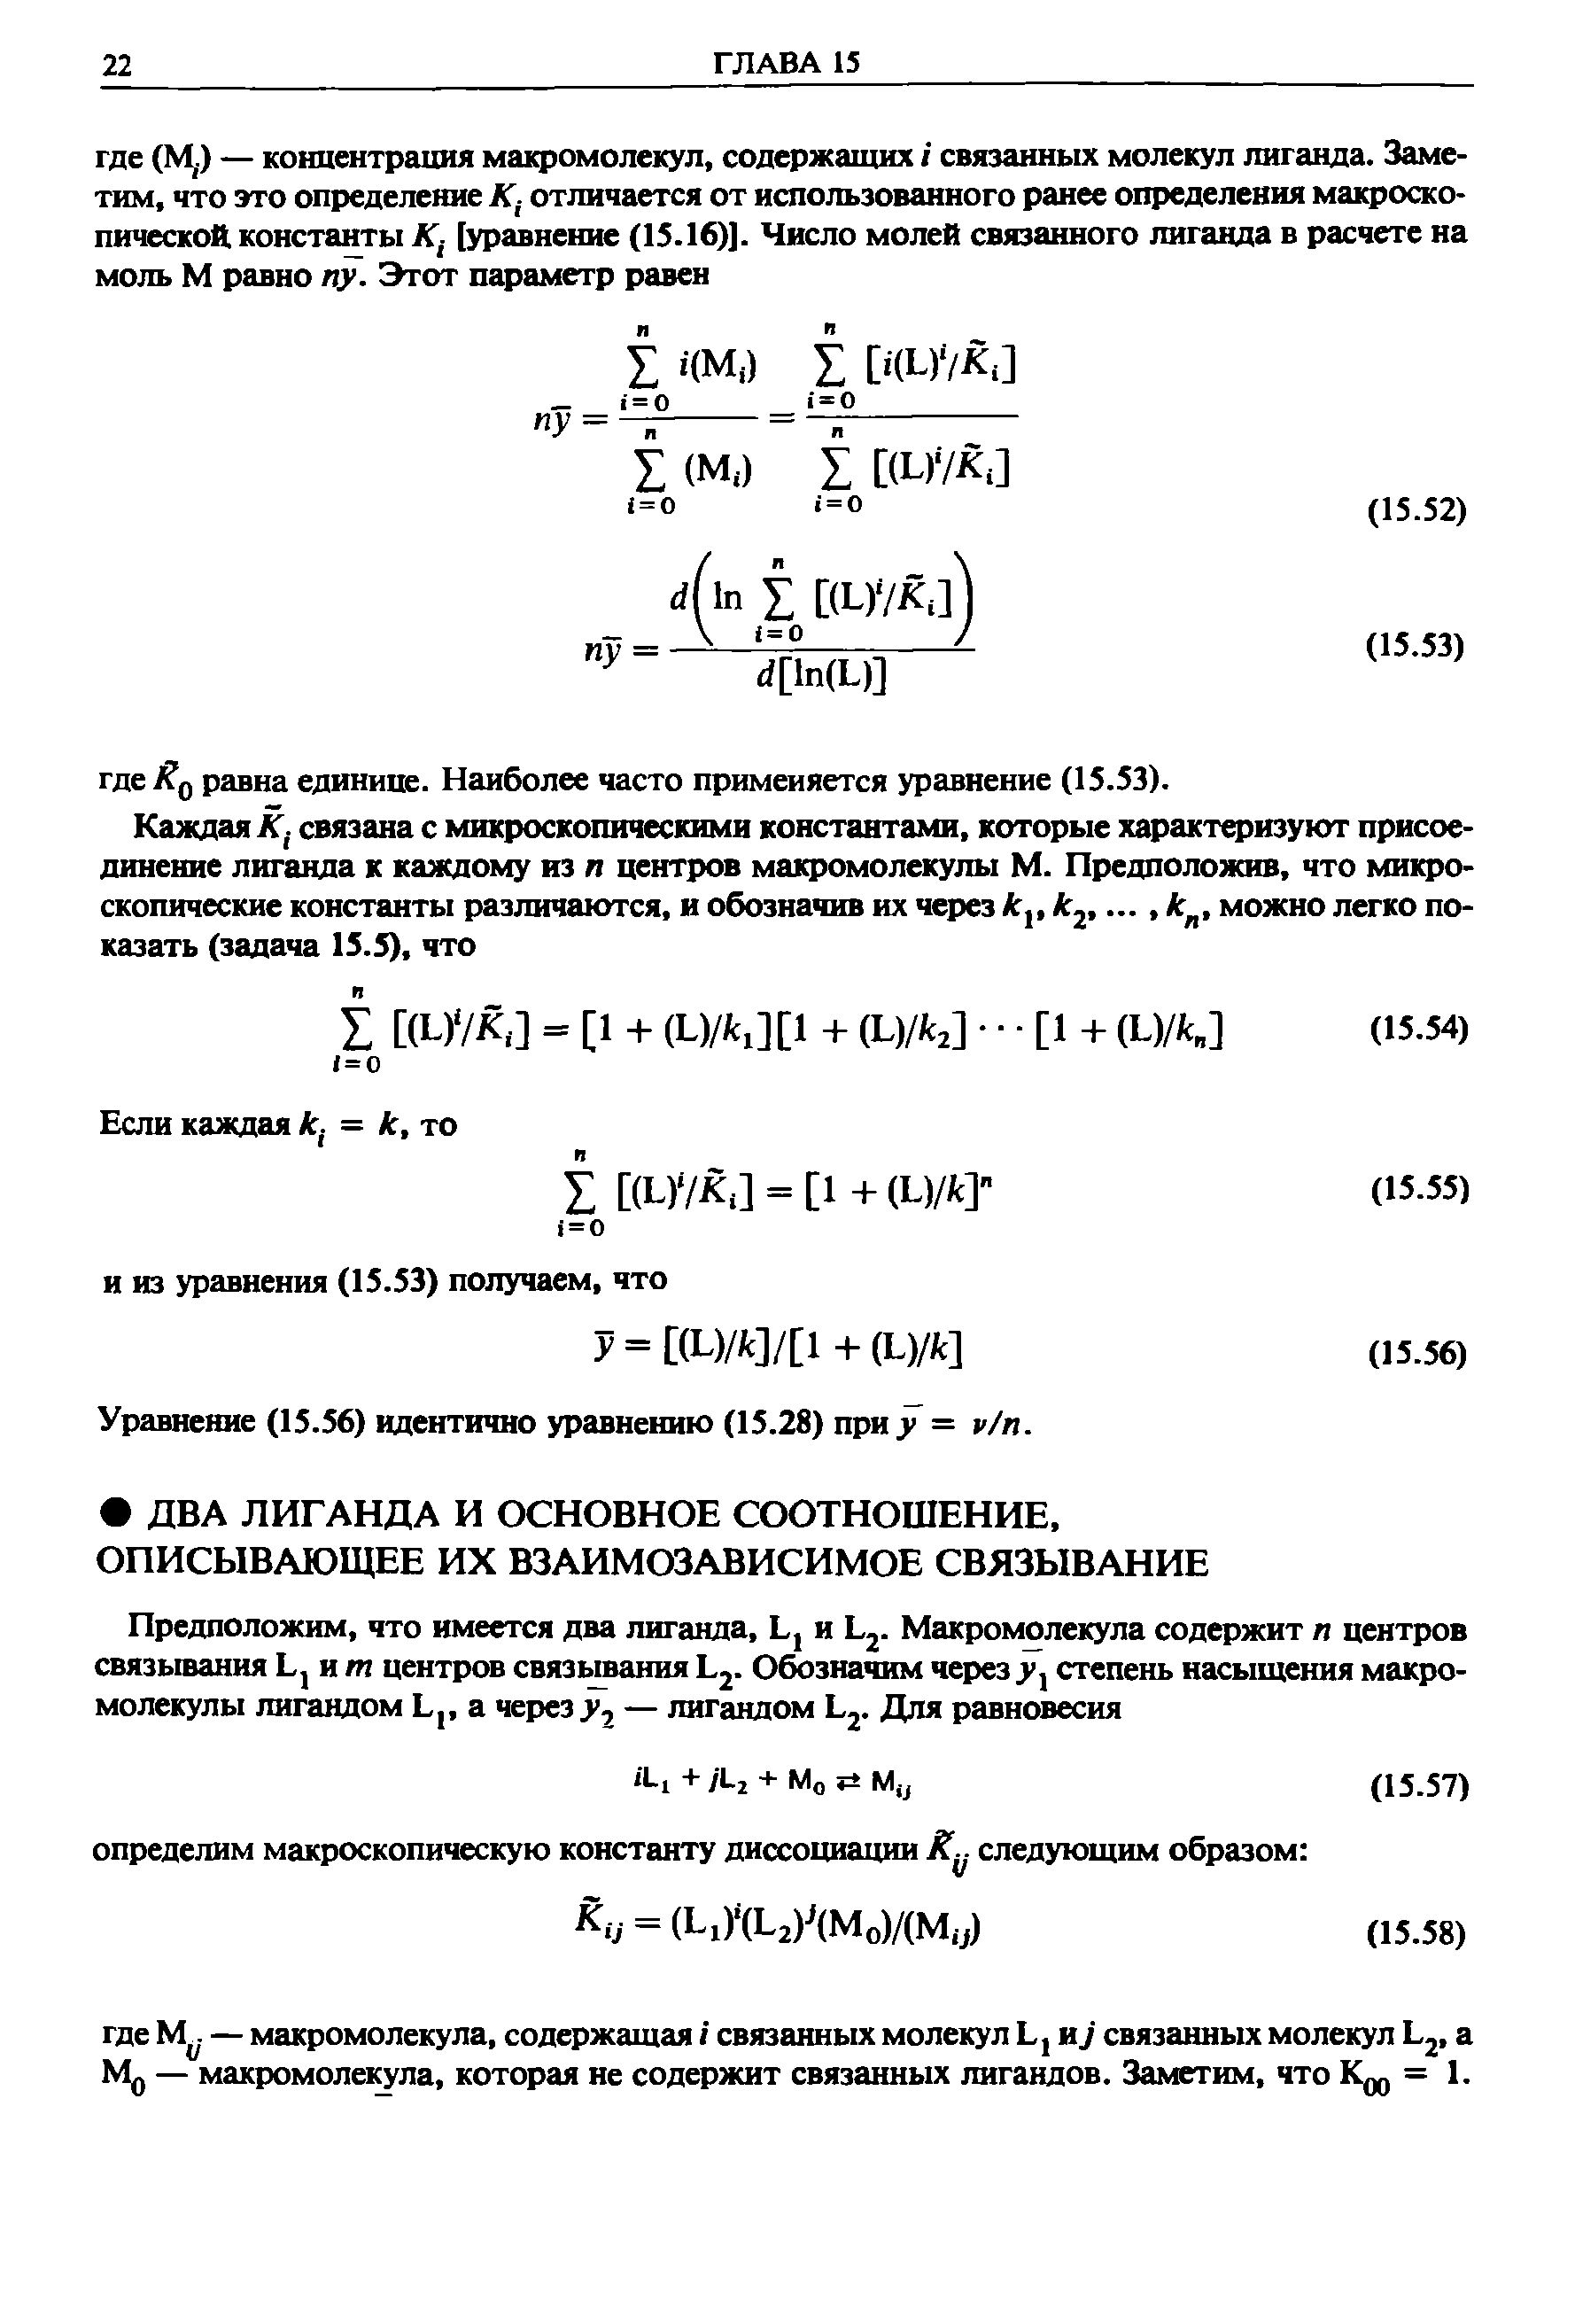 Уравнение (15.56) идентично уравнению (15.28) при = р/п.